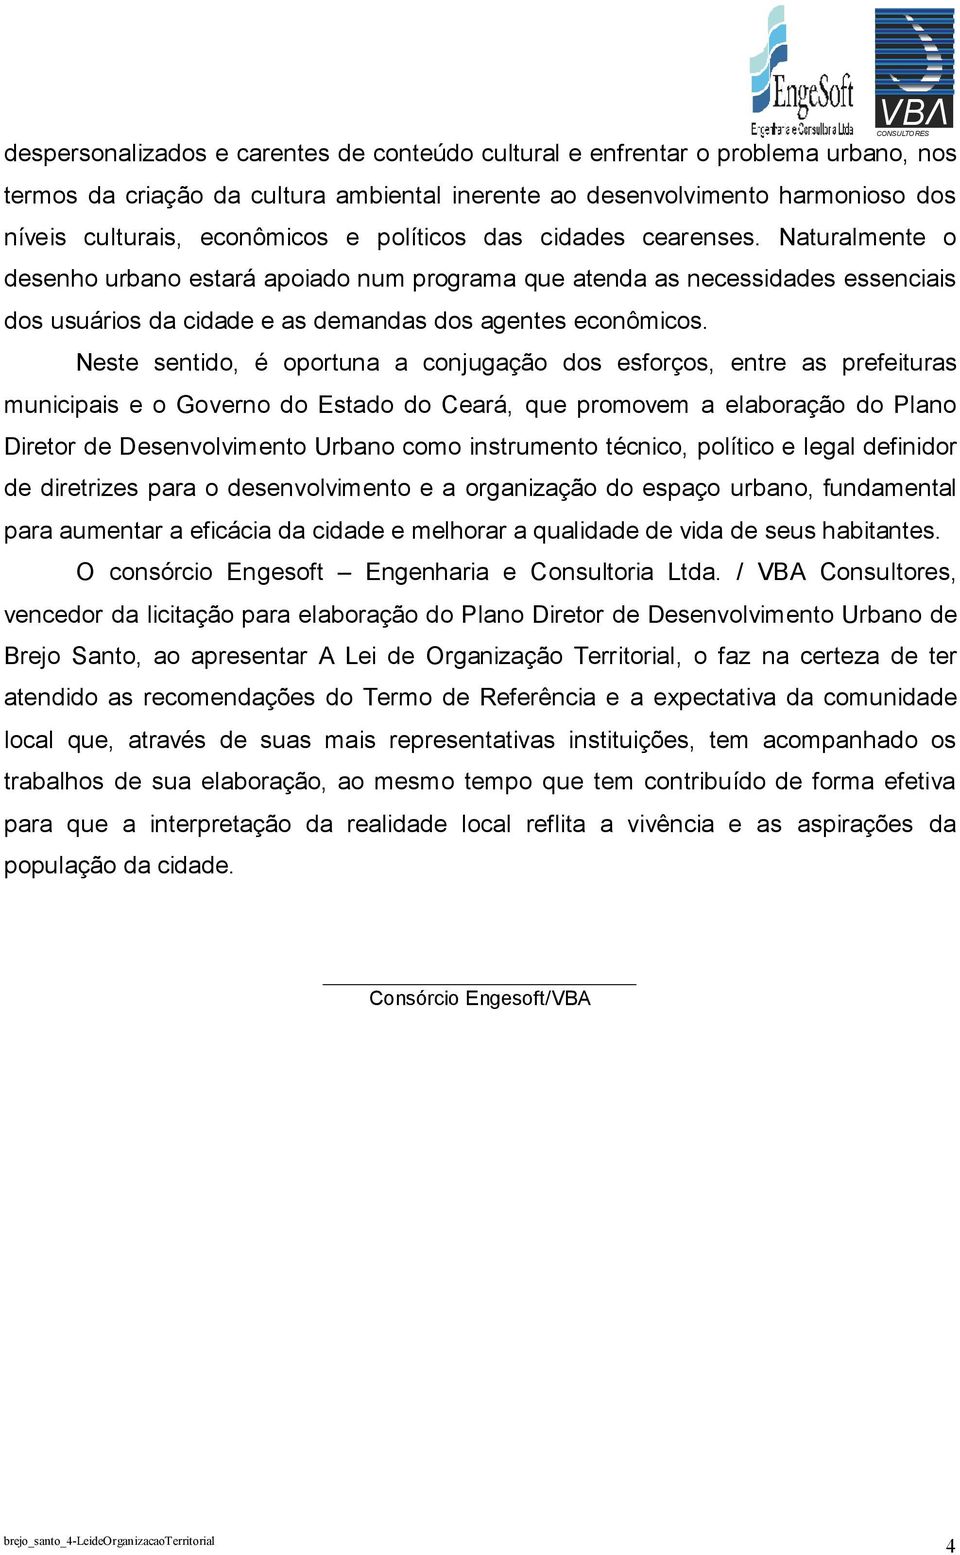 Neste sentido, é oportuna a conjugação dos esforços, entre as prefeituras municipais e o Governo do Estado do Ceará, que promovem a elaboração do Plano Diretor de Desenvolvimento Urbano como